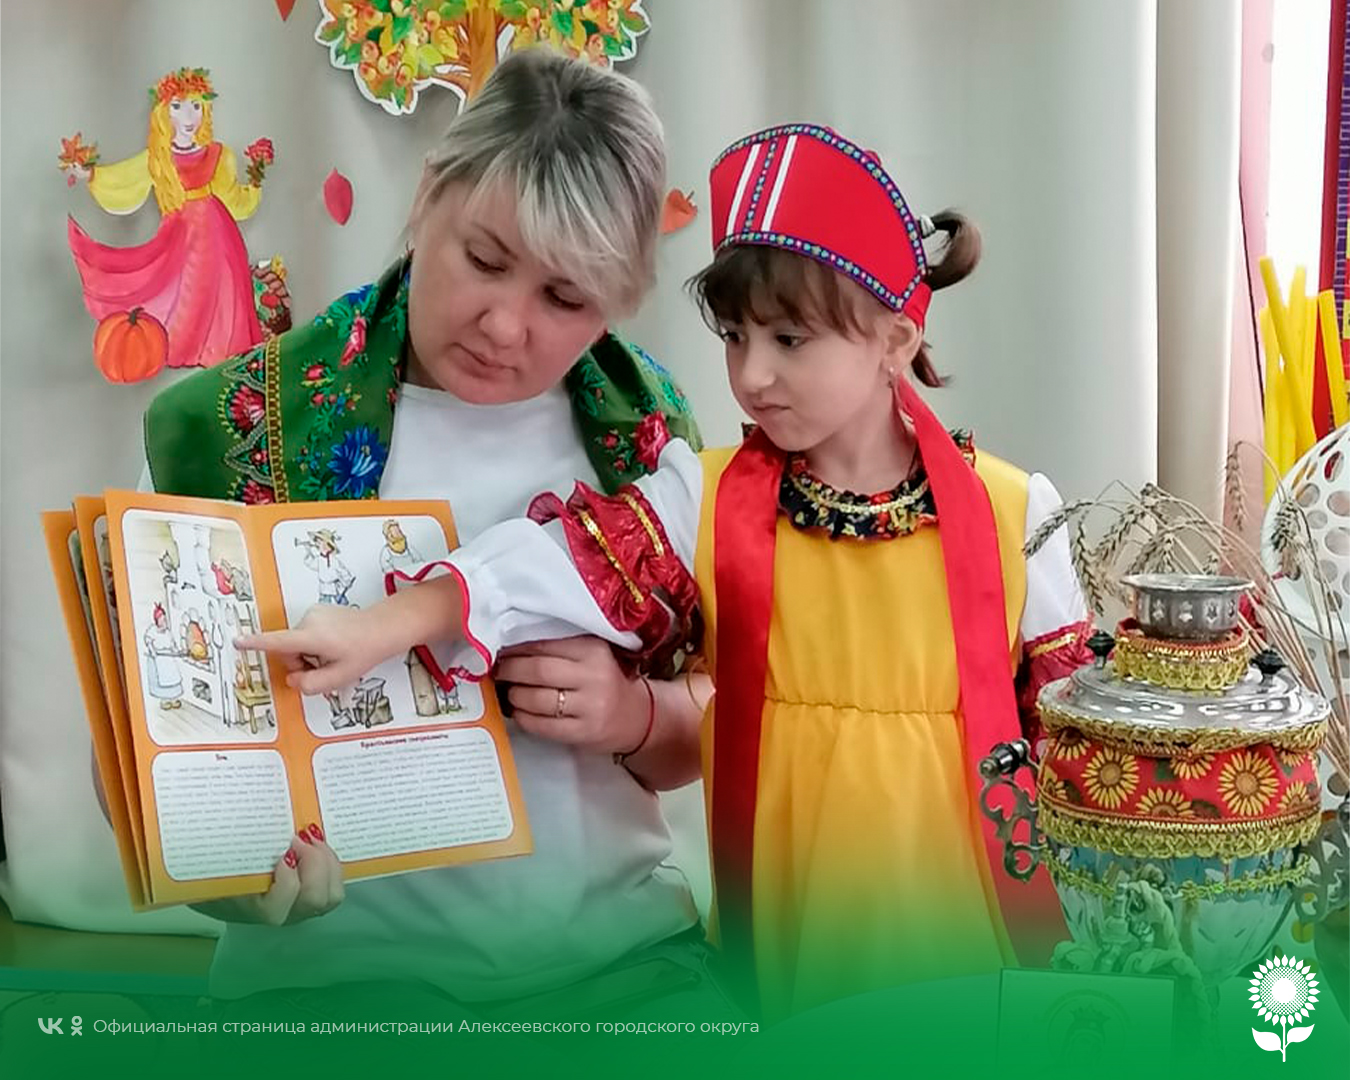 В детских садах Алексеевского городского округа состоялось мероприятие «Посиделки в русской избе».